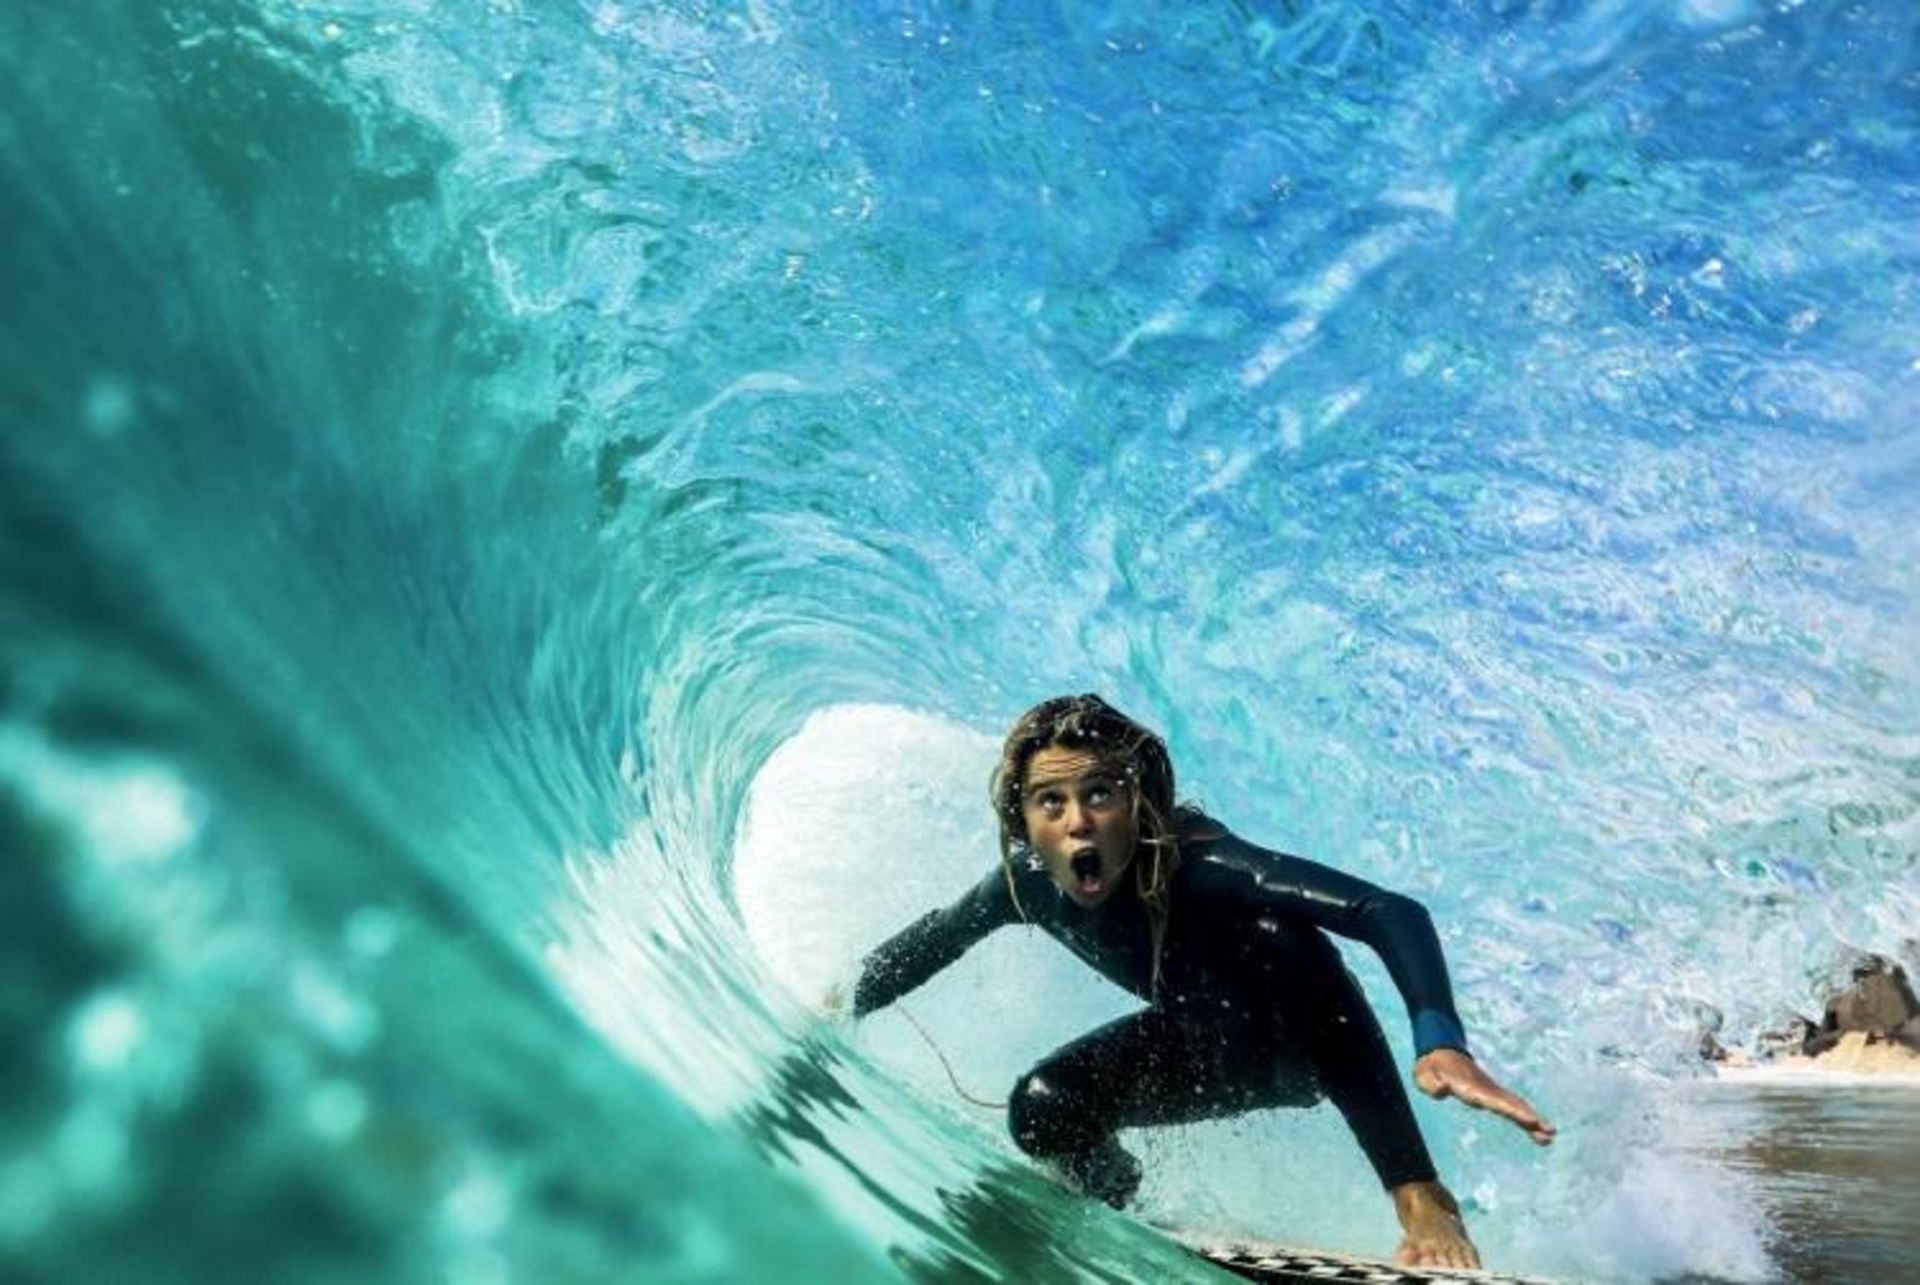 مرجع متخصصين ايران عكس فيناليست تراويس جانسون در مسابقه عكاسي 2020 Surf Photo Nikon Australia